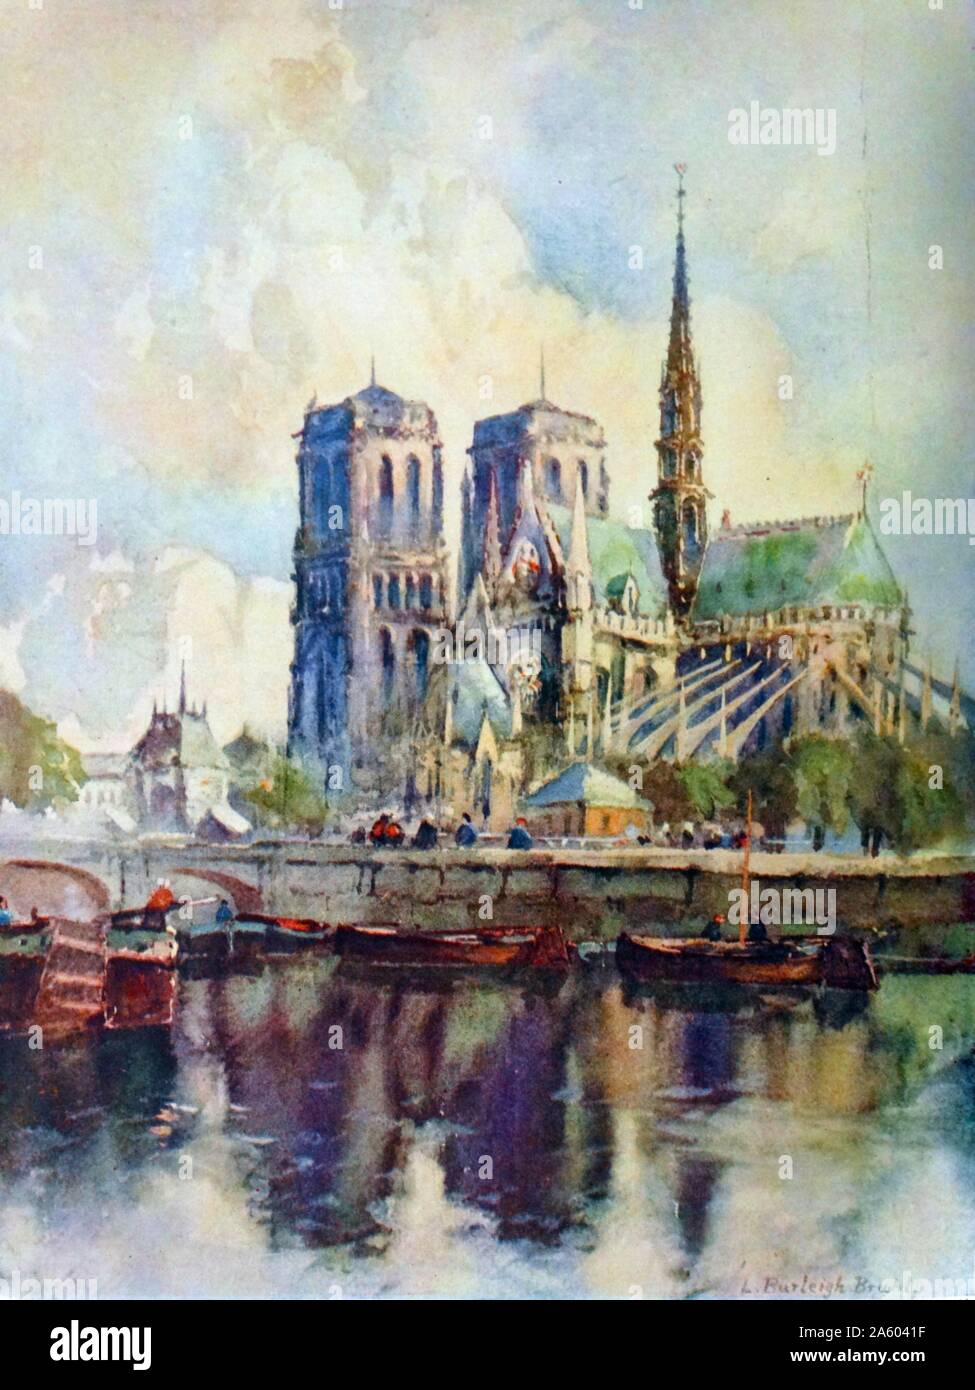 Aquarelle peinture représentant la cathédrale de Notre-Dame par Louis Burleigh Bruhl (1861-1942) un paysagiste anglais. En date du 20e siècle Banque D'Images